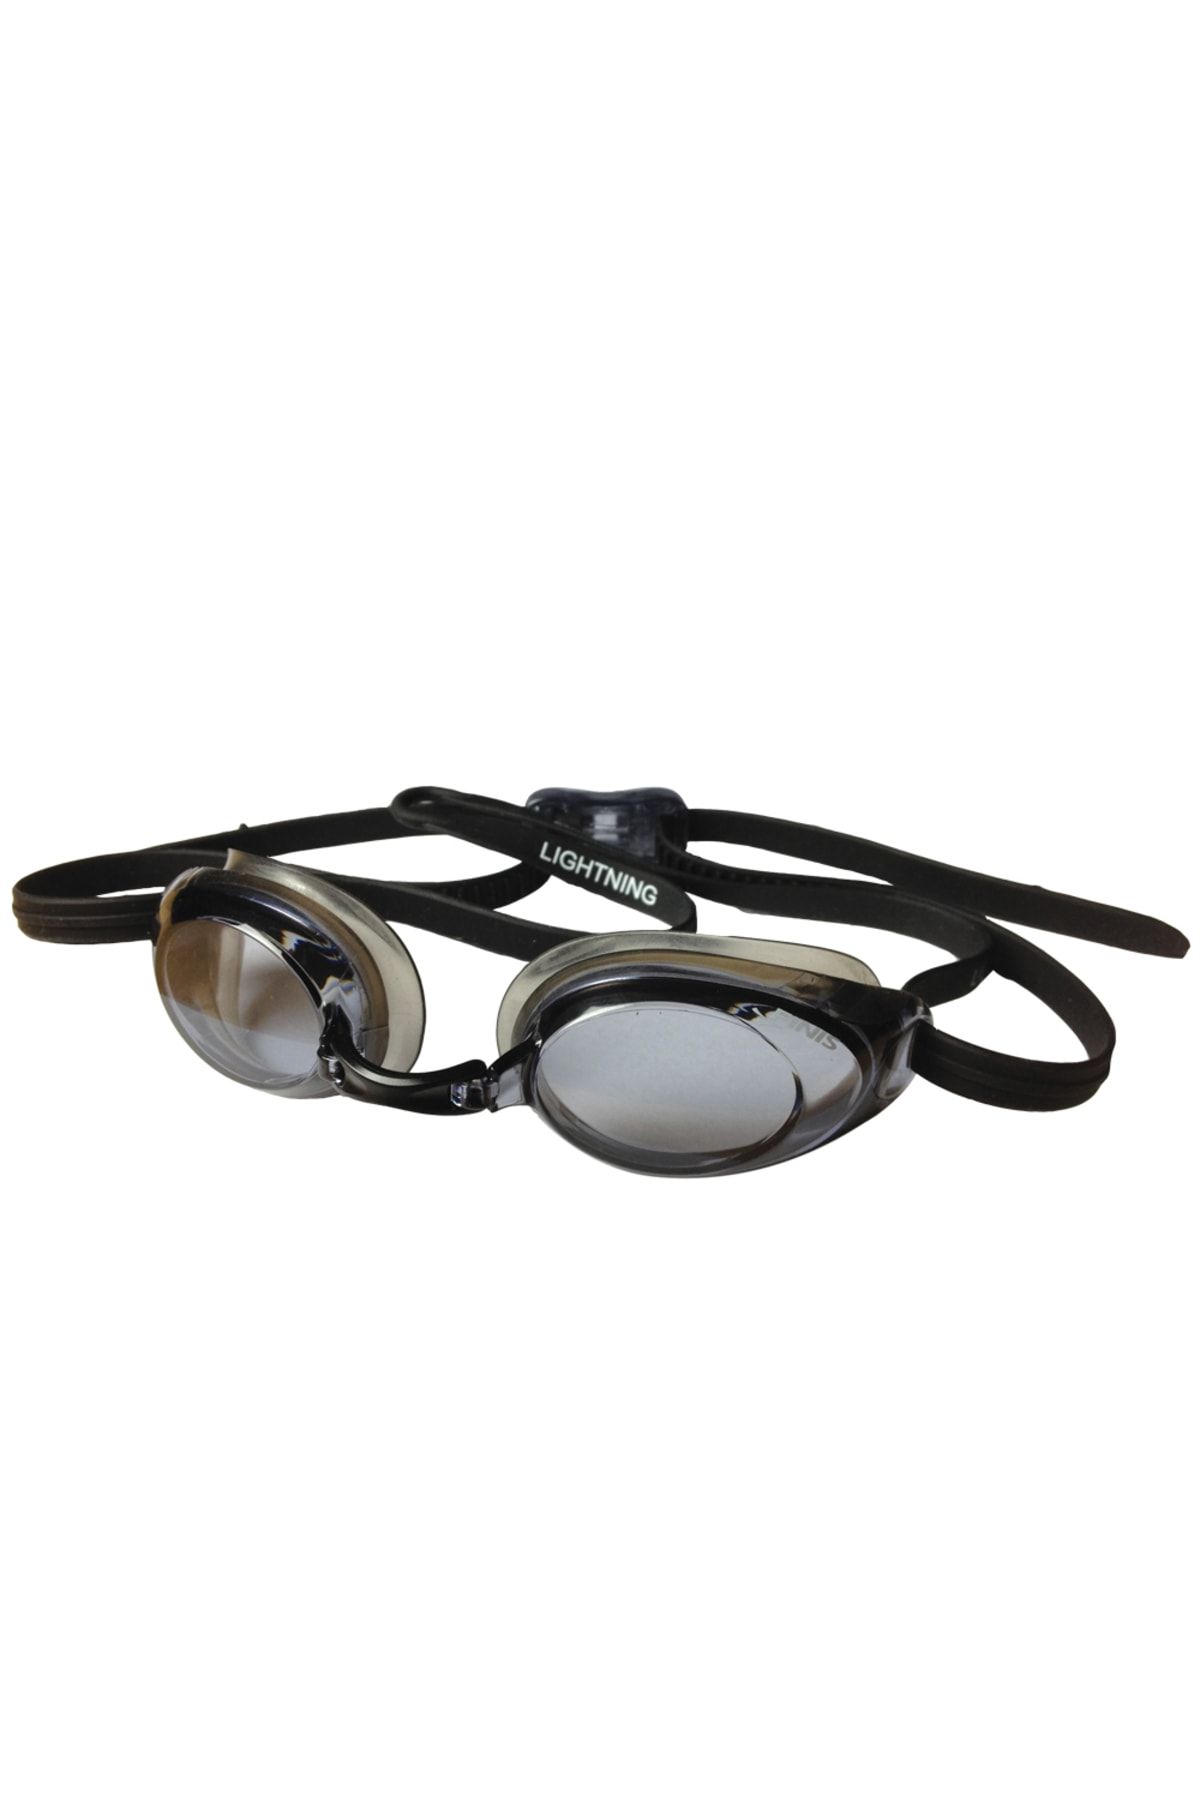 Finis Lıgtnıng Yüzücü Yarış Gözlüğü Smoke (siyah)